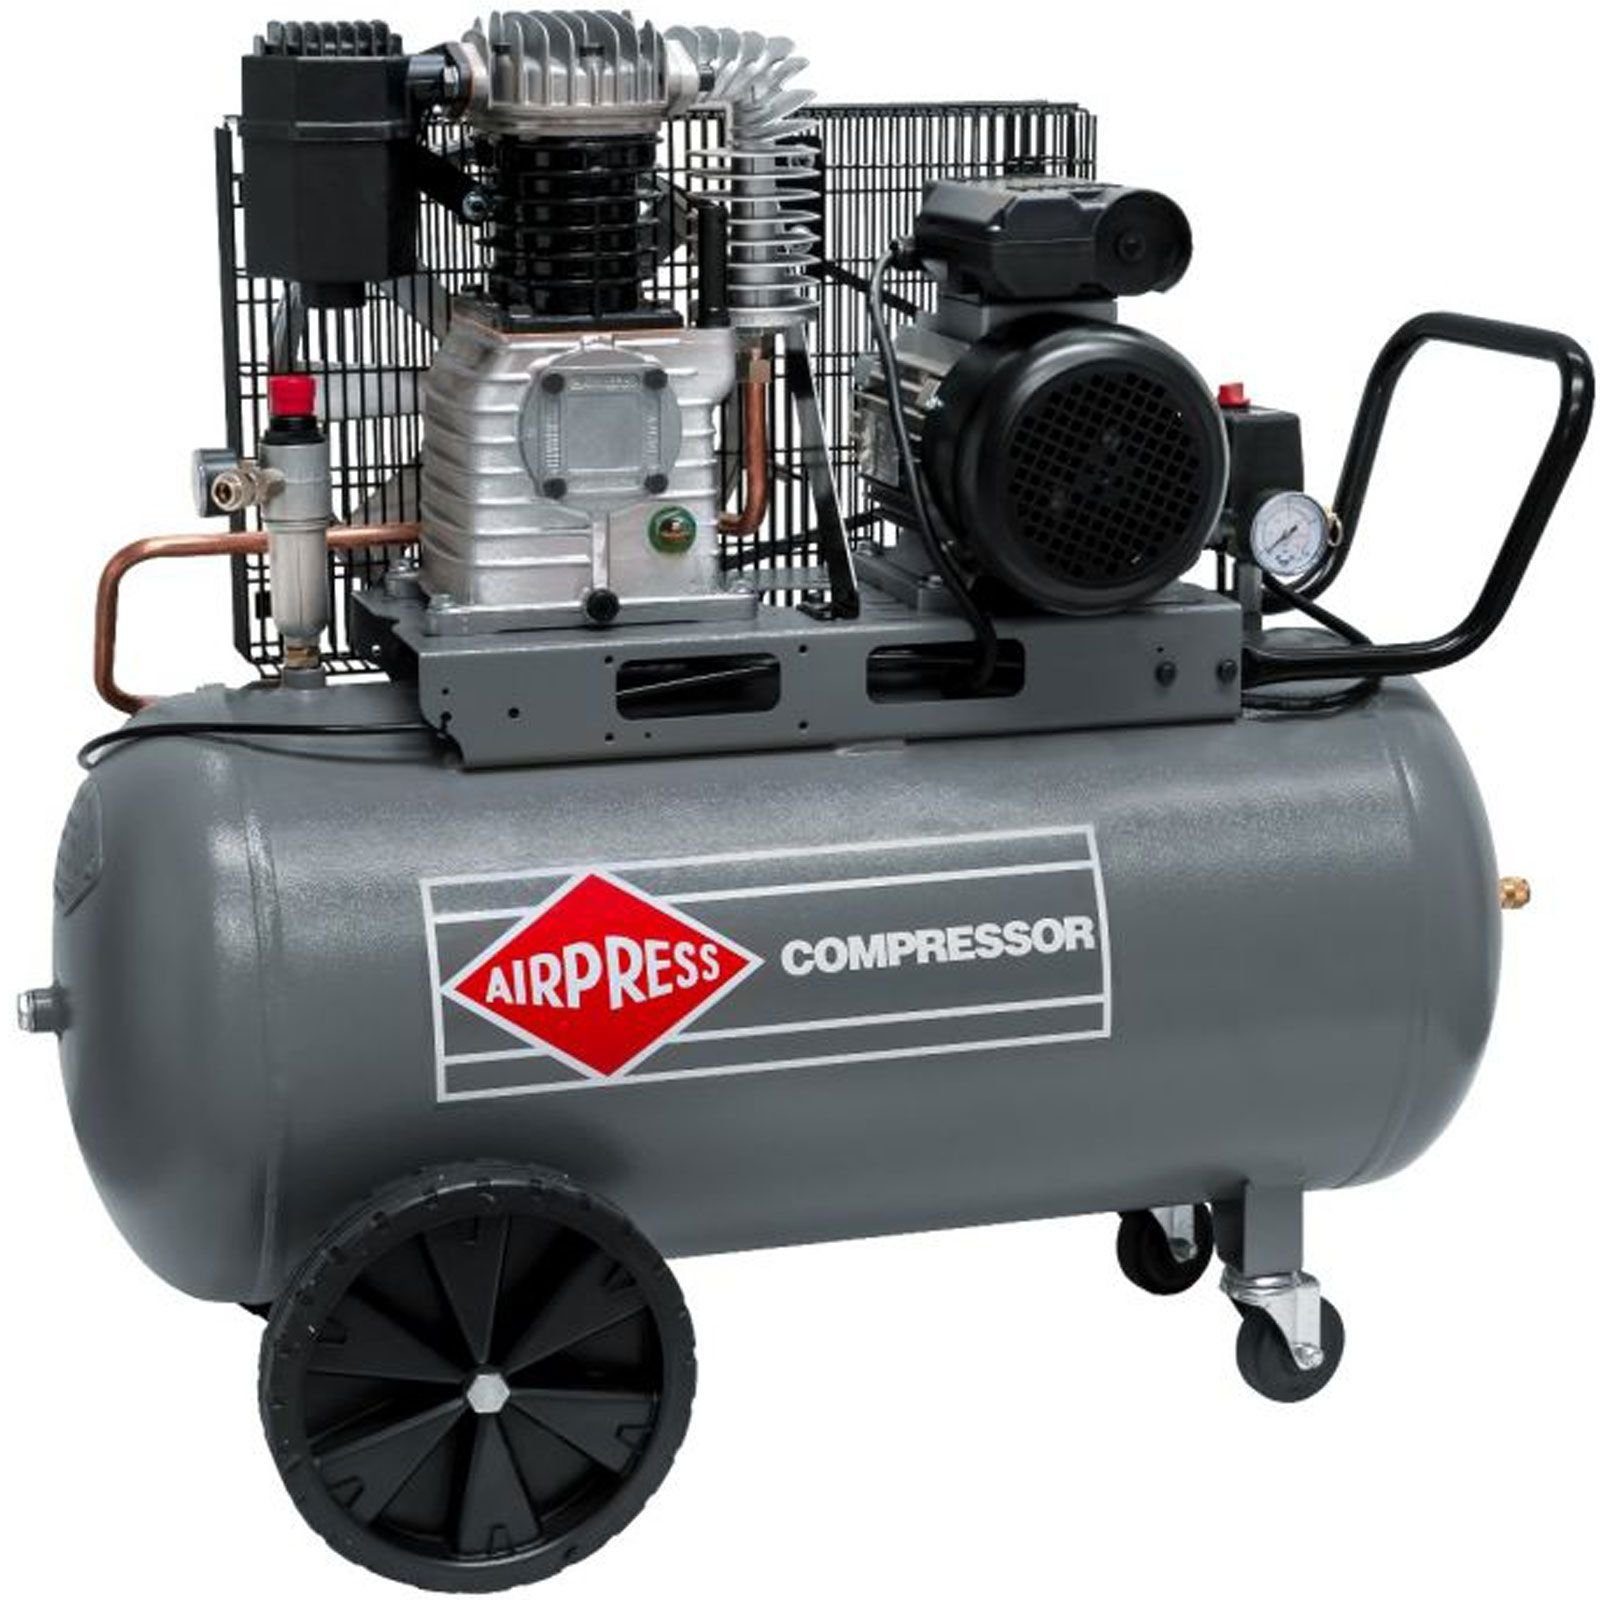 Kompressor l, PS Kompressor 1 10 100 Stück 425-100 10 100 max. 3,0 Liter Typ Druckluft- 360566, HL bar, bar Airpress